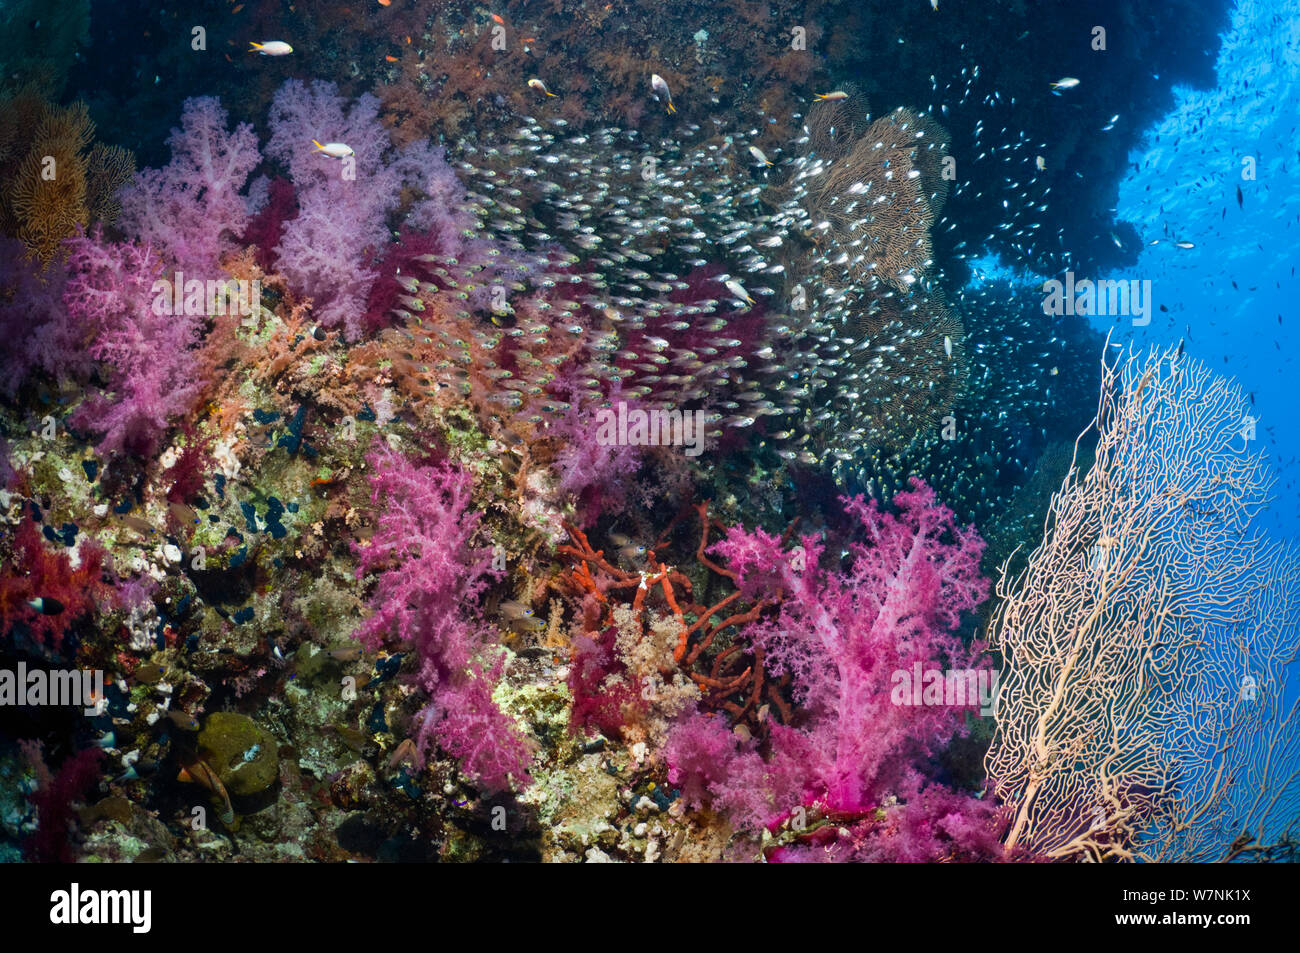 Coral reef paesaggi con coralli molli (Dendronephthya sp) e spazzatrici pigmeo (Parapriacanthus guentheri). Egitto, Mar Rosso. Foto Stock